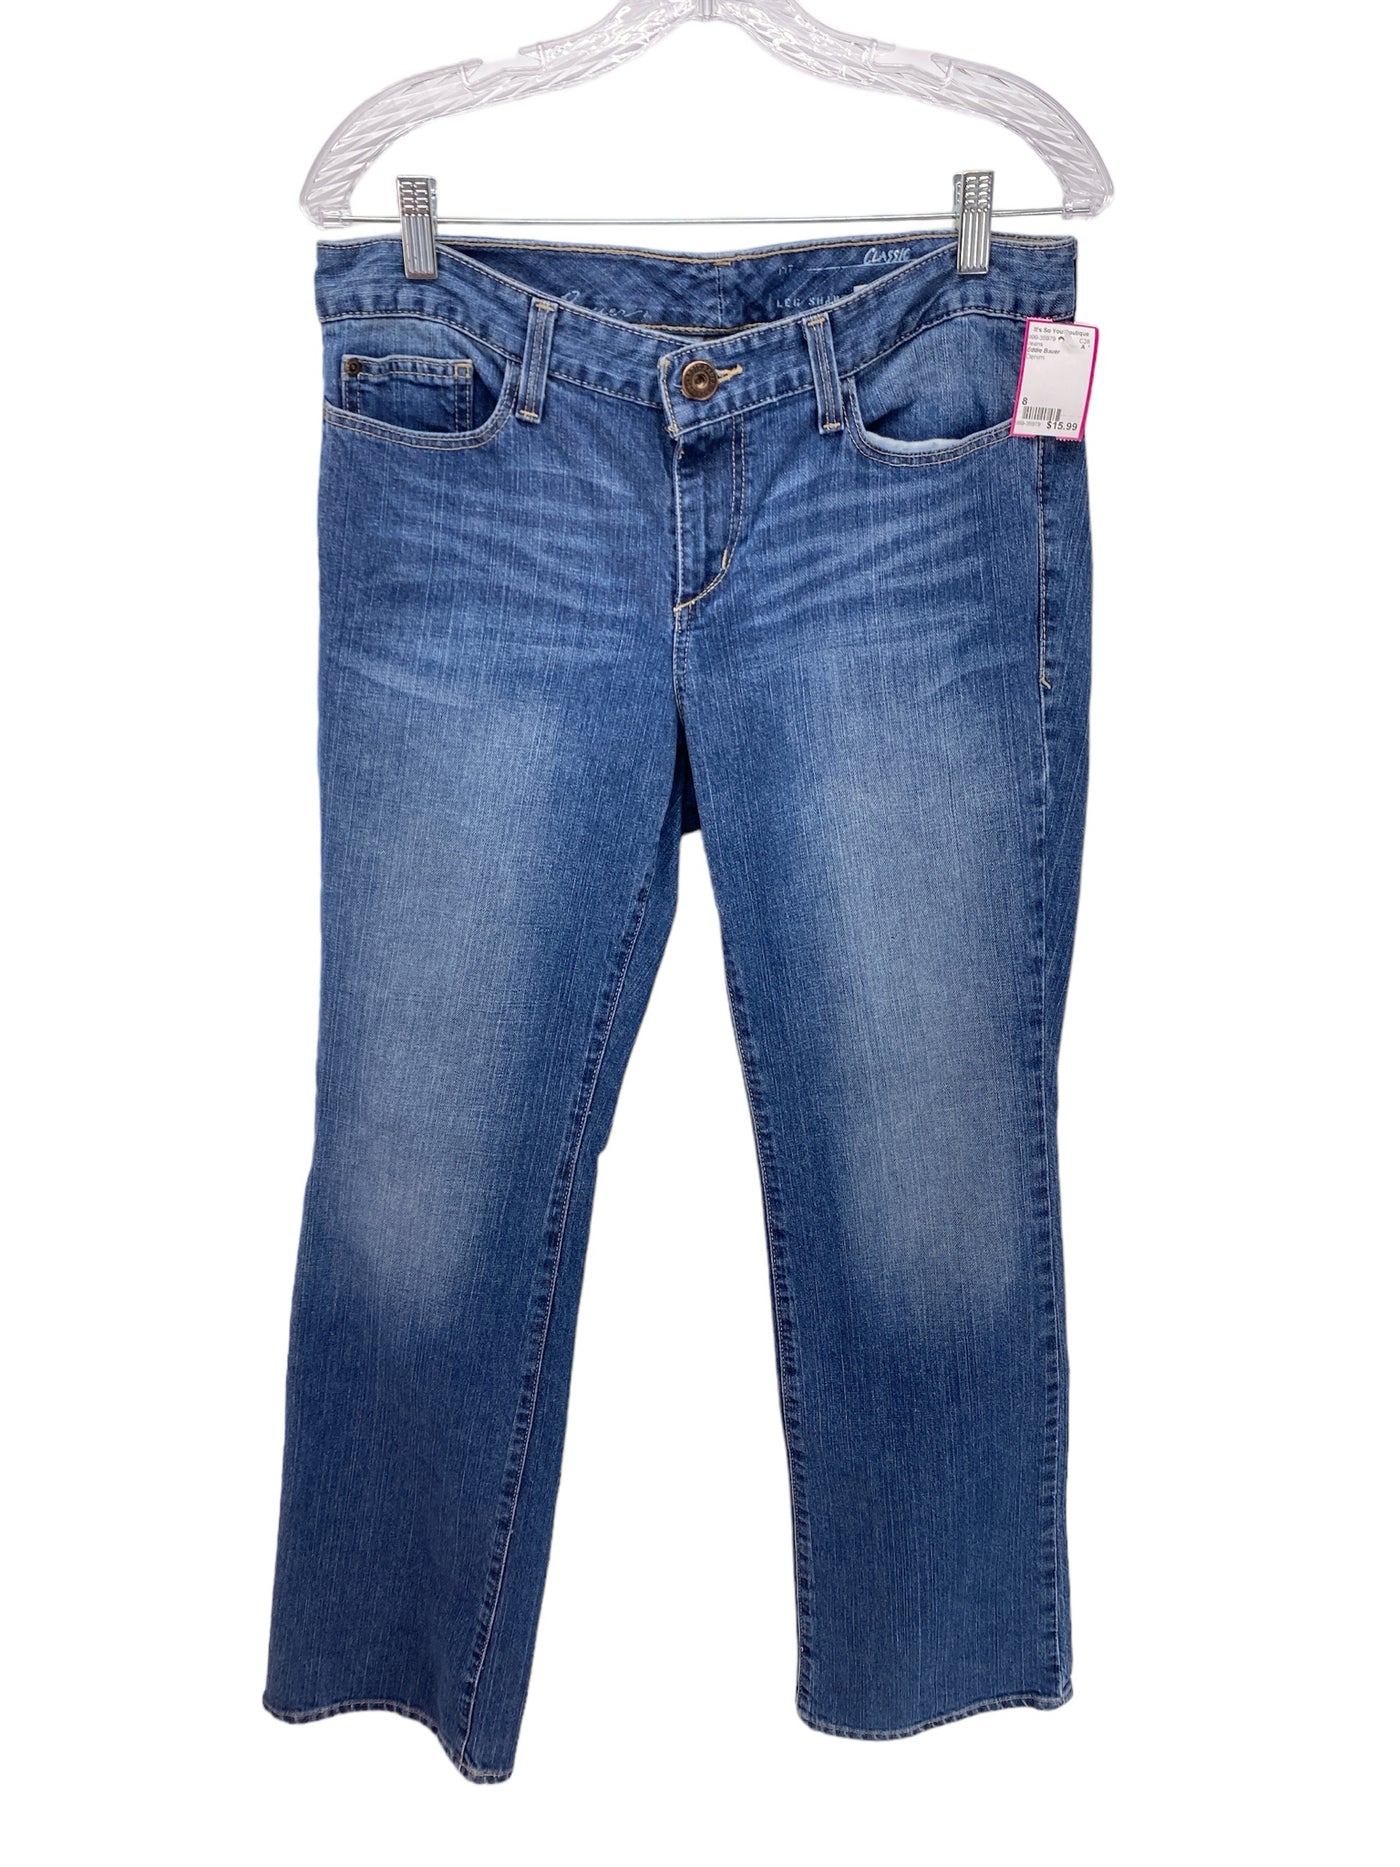 Eddie Bauer Misses Size 8 Denim Jeans